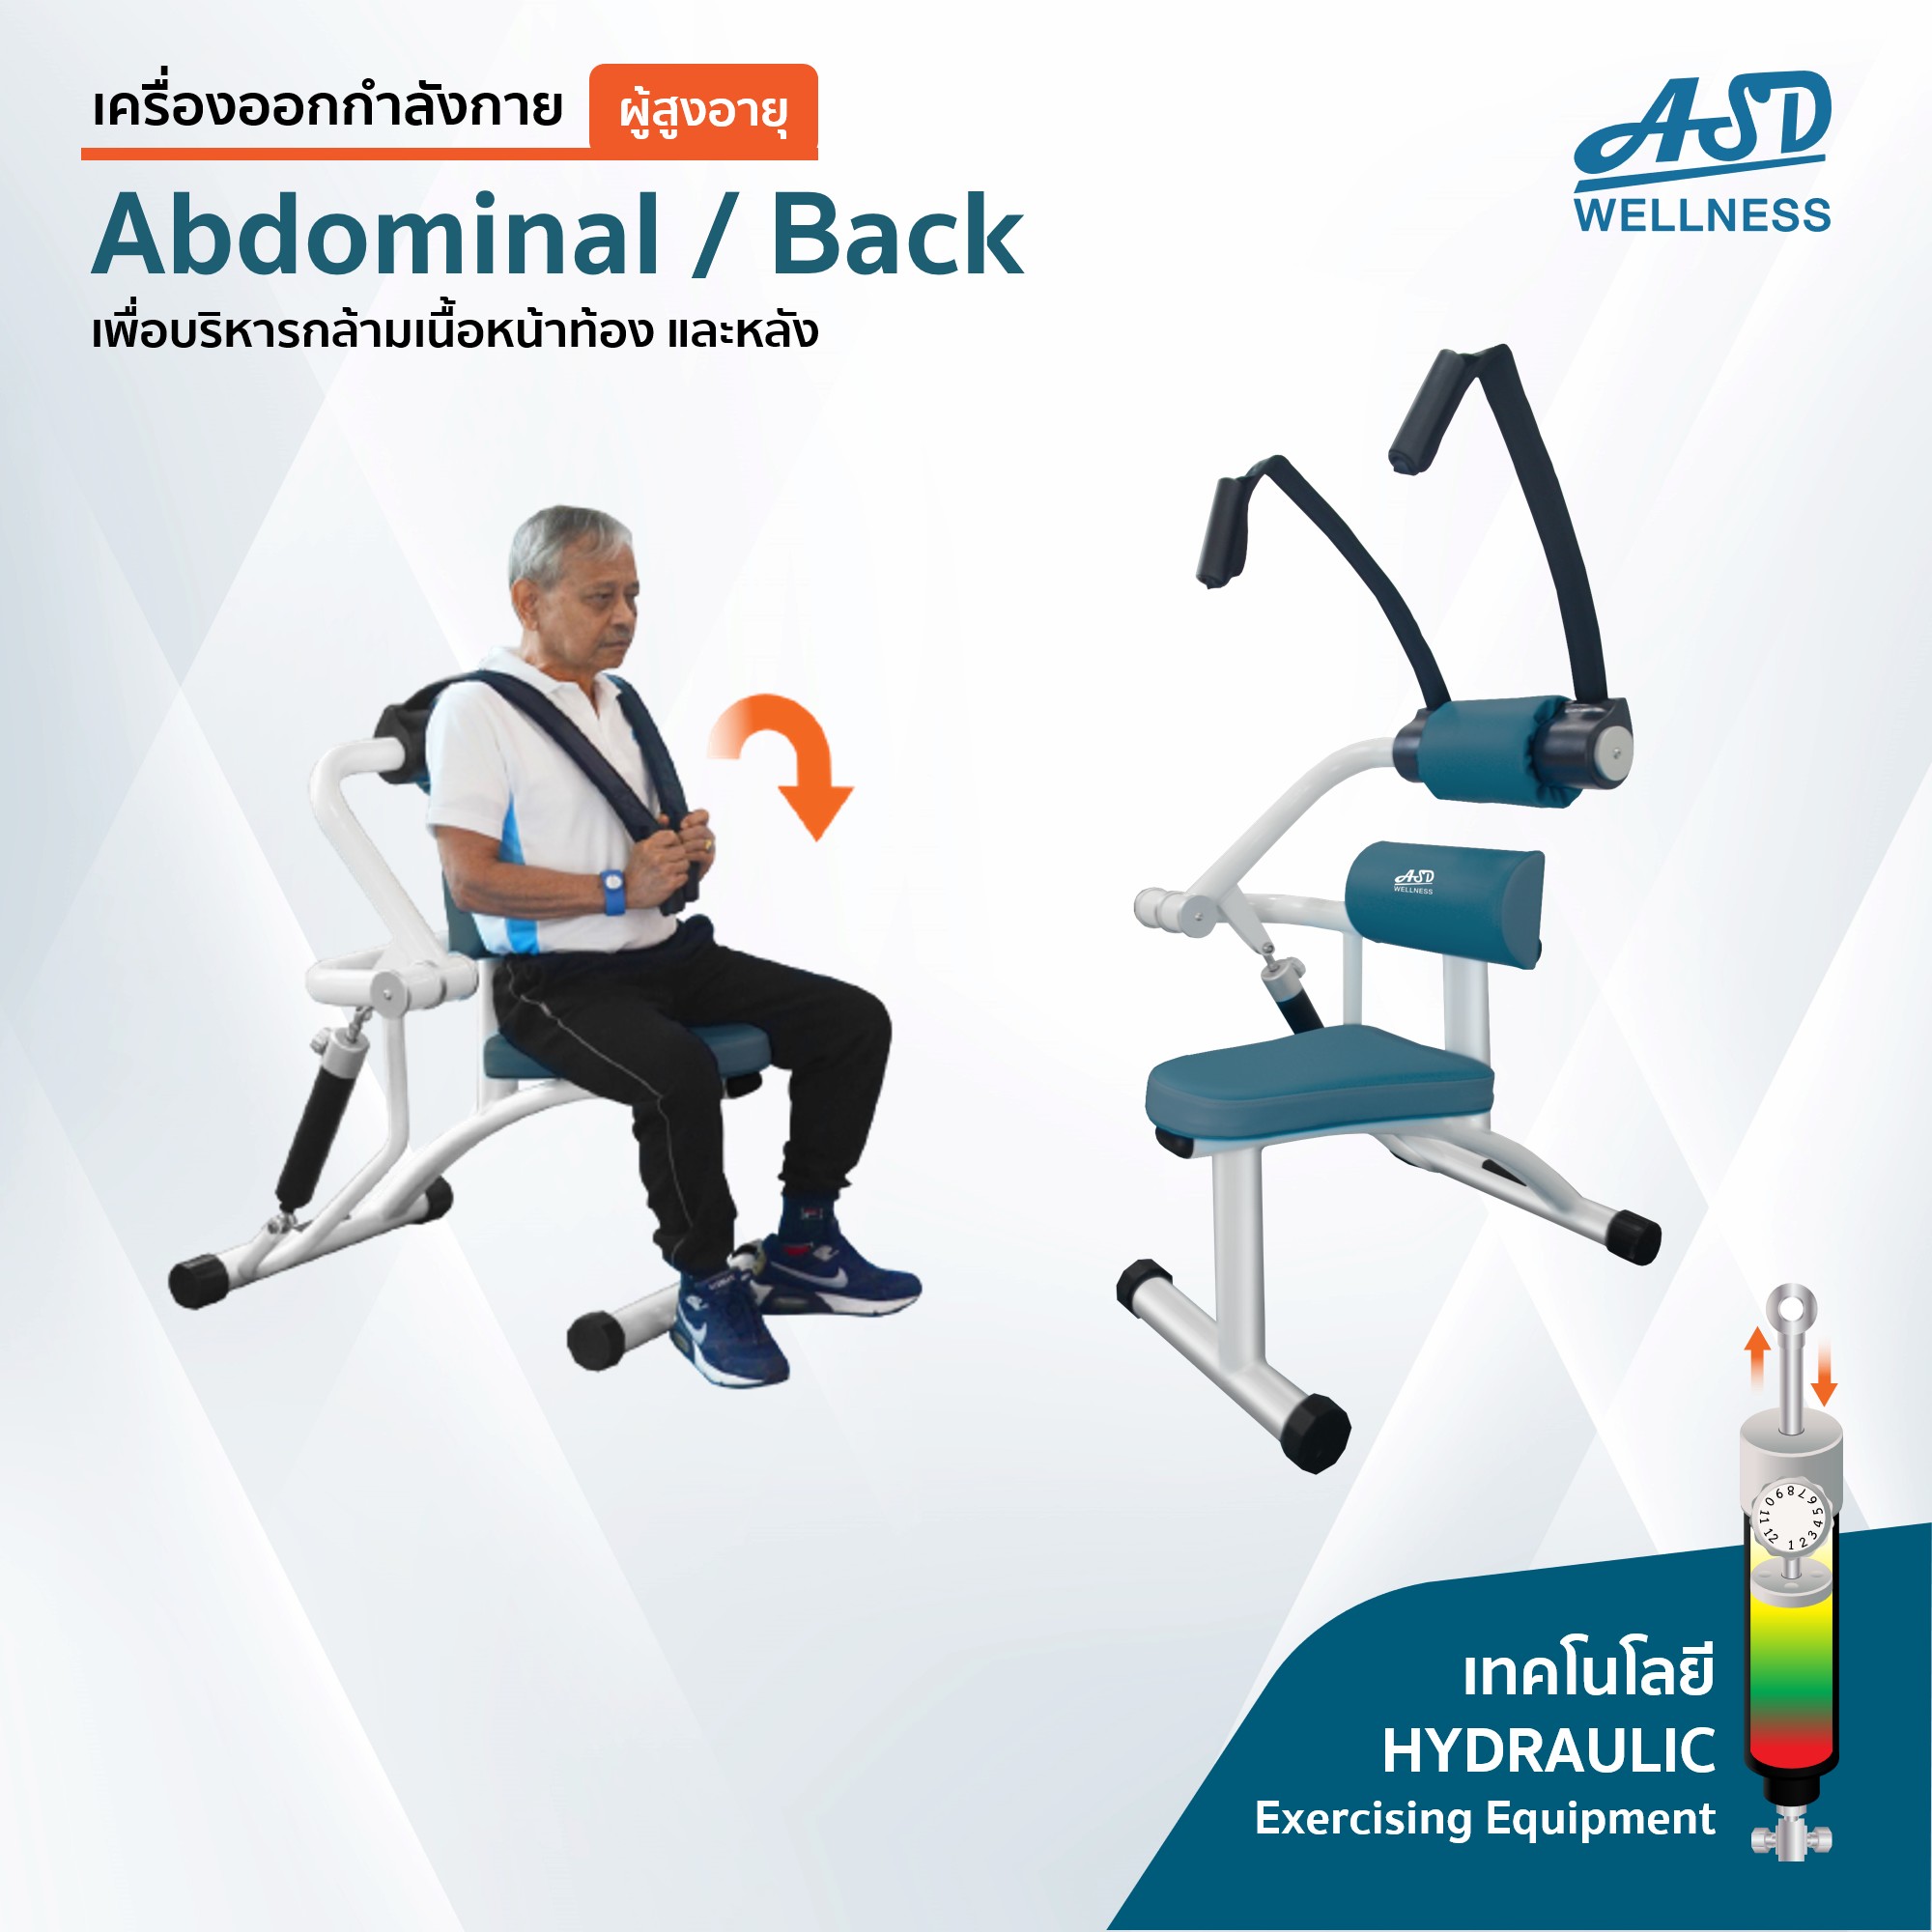 สำหรับผู้สูงอายุ เพื่อบริหารกล้ามเนื้อหน้าท้อง และหลัง Abdominal / Back